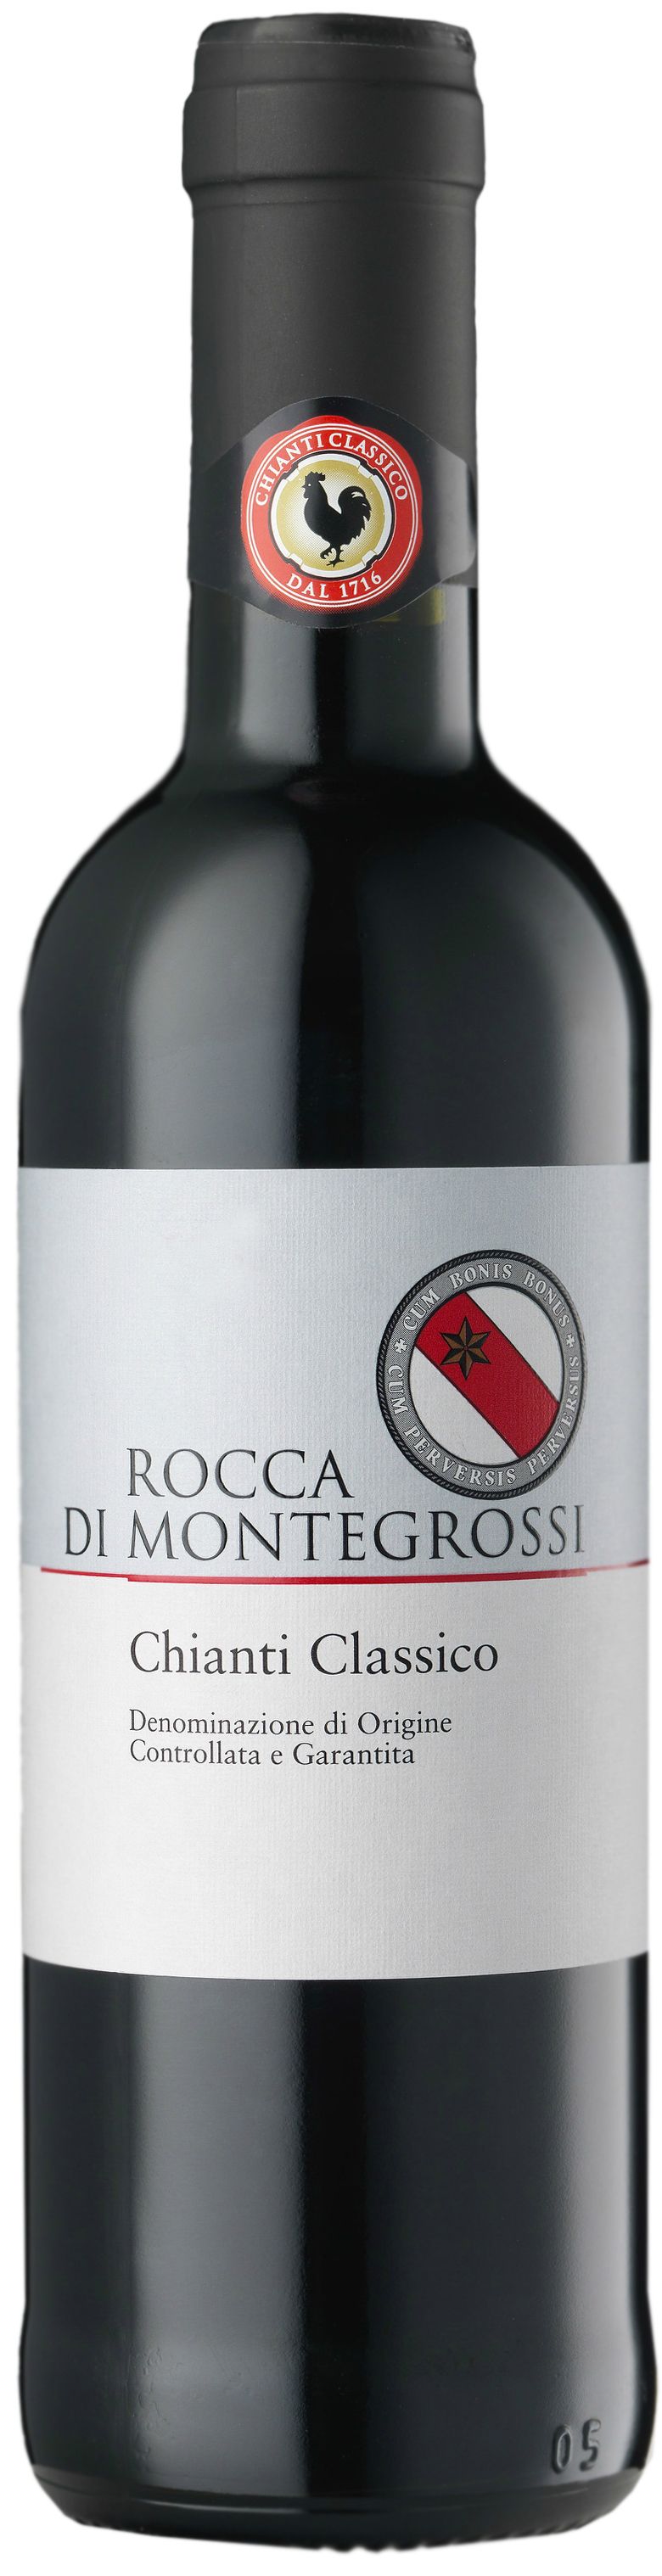 Rocca Di Montegrossi, Chianti Classico, 2015